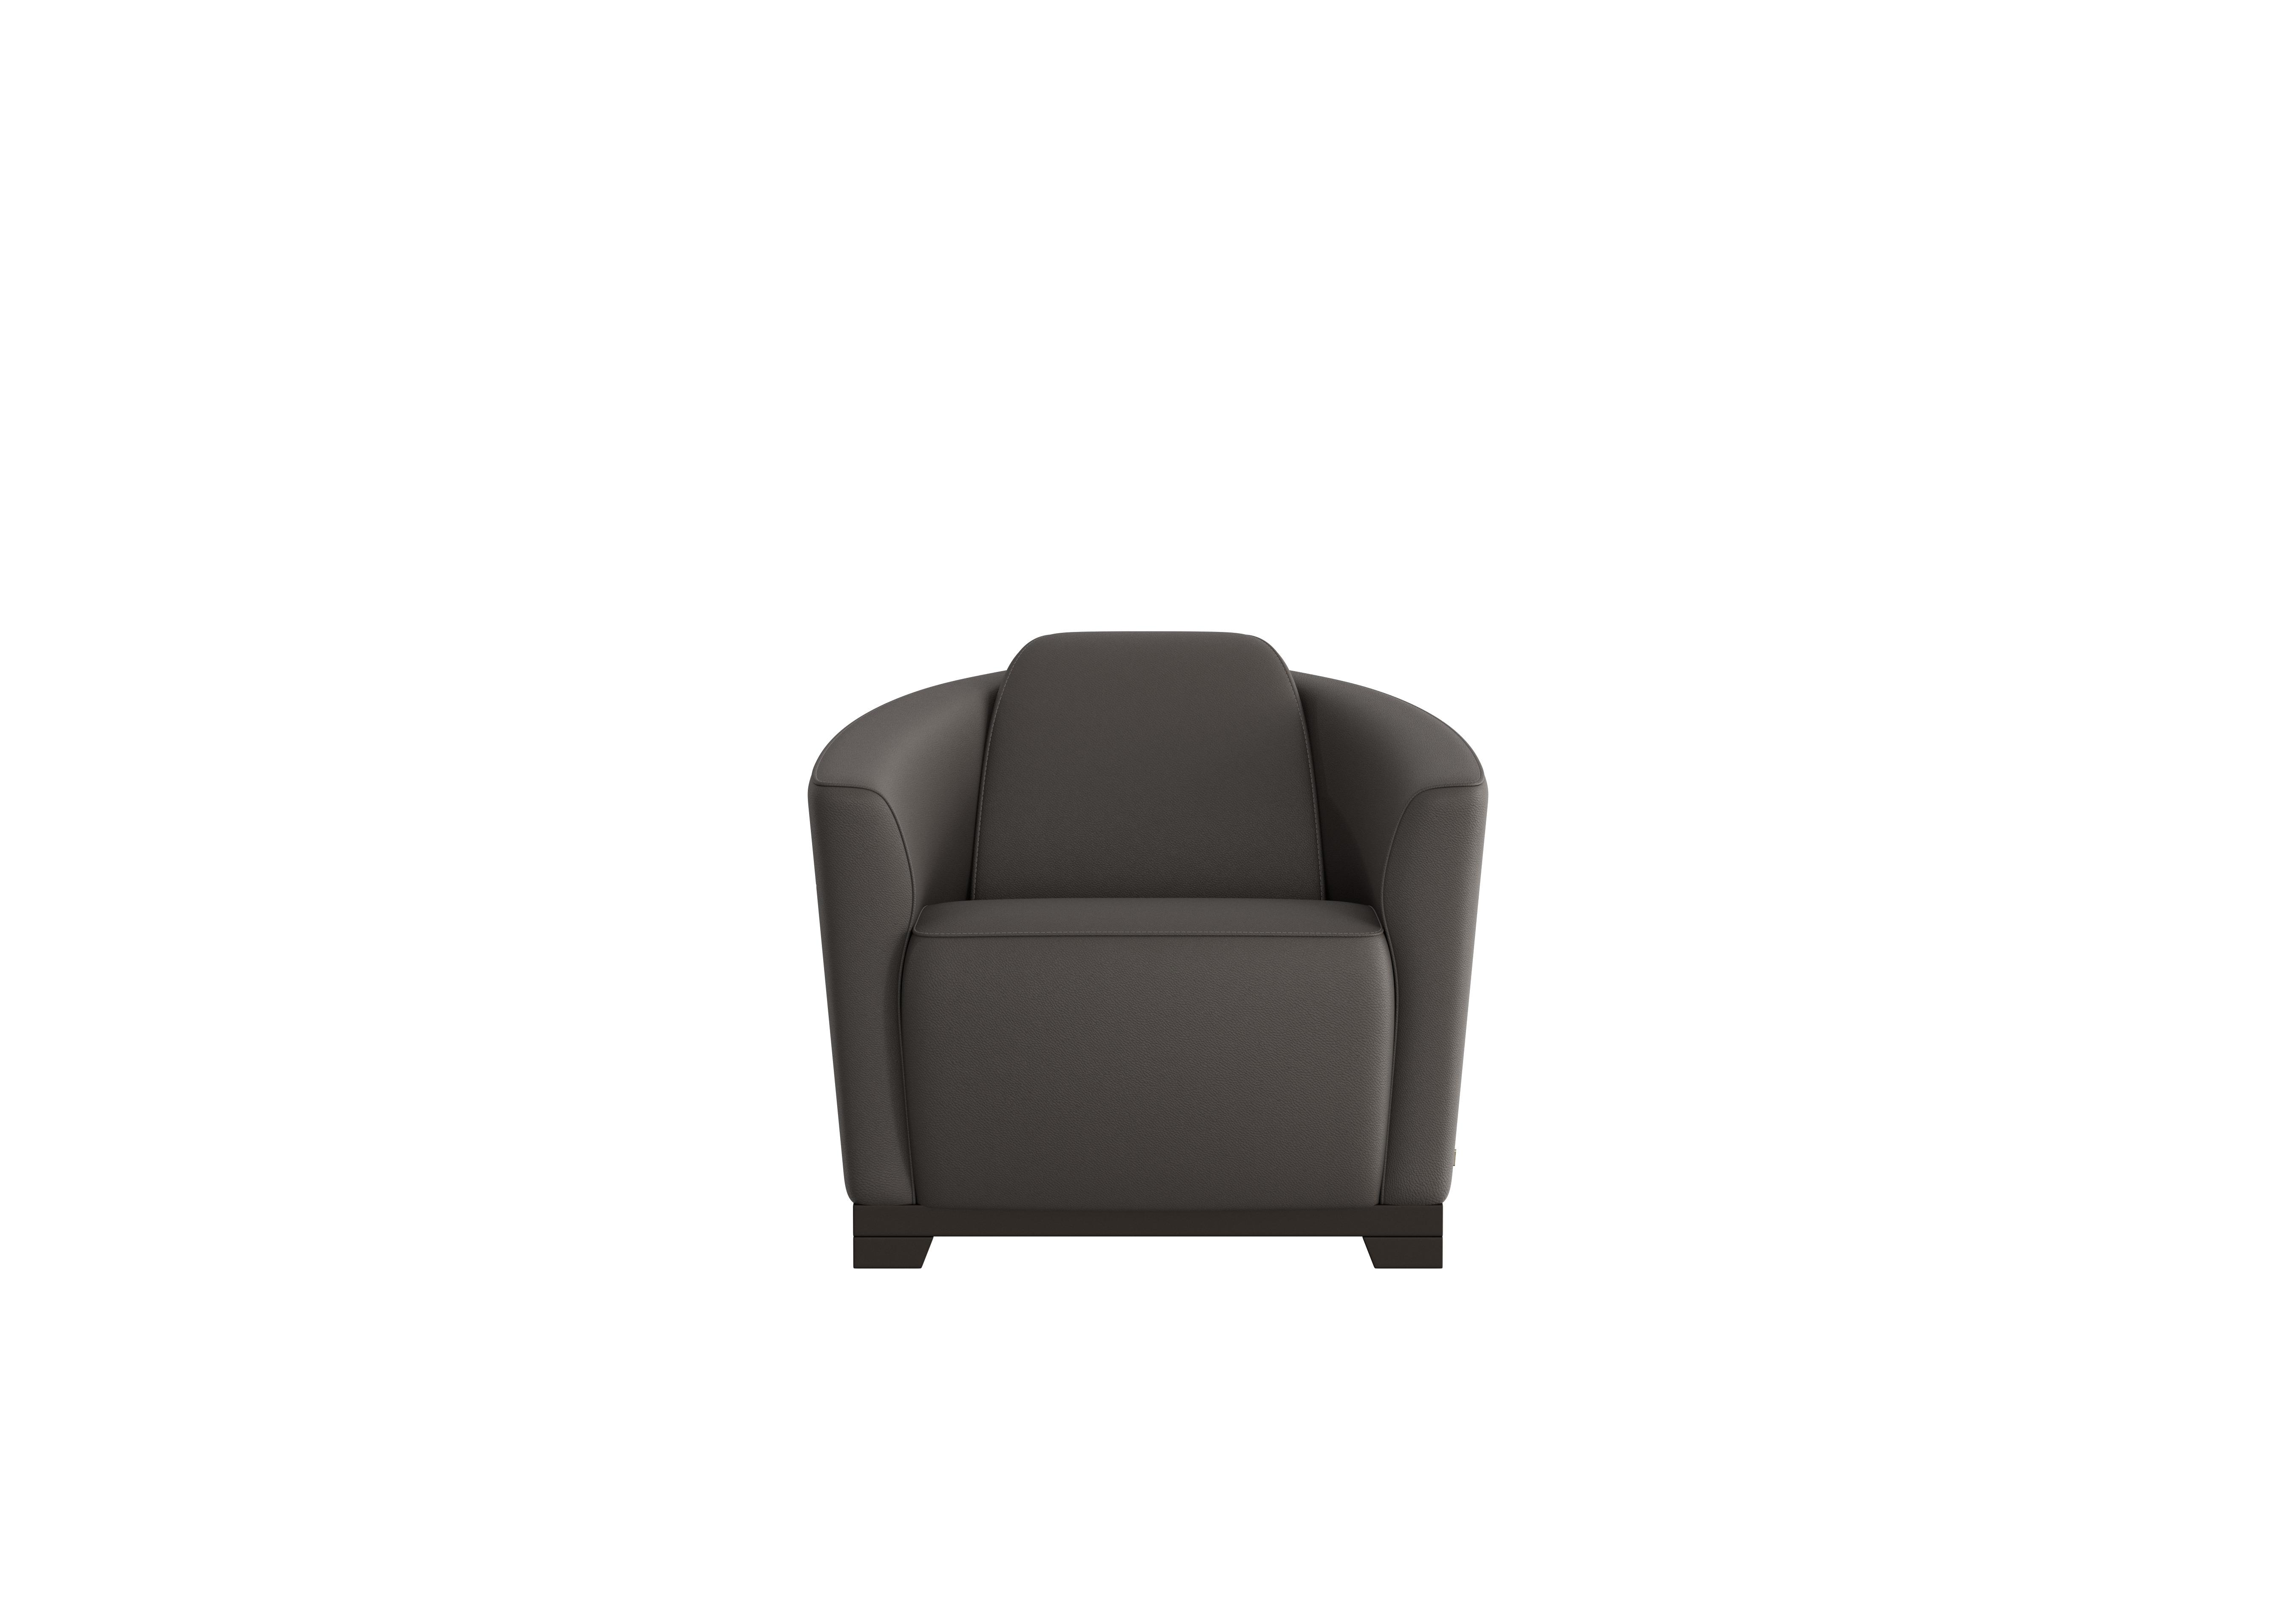 Ketty Leather Accent Chair in Torello Grigio Scuro 327 on Furniture Village